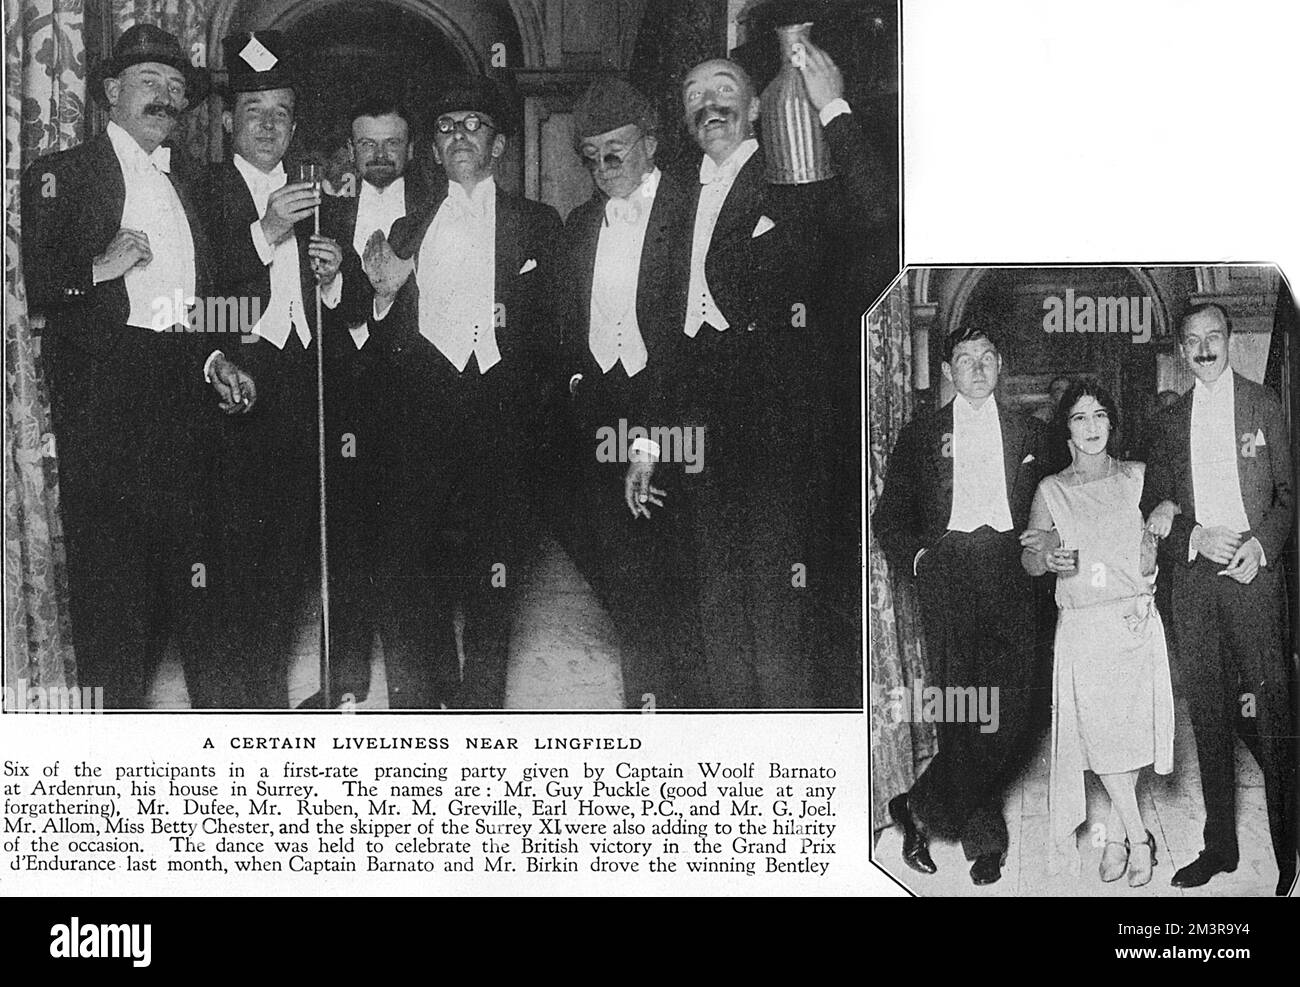 I partecipanti ad una festa di primo livello presso la Ardenrun House, Surrey, si sono tenuti per celebrare la vittoria britannica nel Gran Premio d'Endurance (giugno 1929), dove il Capitano Barnato (il proprietario di Ardenrun) e il Sig. Birkin hanno guidato la Bentley vincente. Da sinistra: Sig. Guy Puckle, sig. Dufee, sig. Ruben, sig. M. Greville, Earl Howe, P.C. e G. Joel. Nella foto a destra si possono vedere Allom, Betty Chester e P.G. Parafango, capitano del Surrey XI, "aggiungendo all'hilarity dell'occasione". Data: 1929 Foto Stock